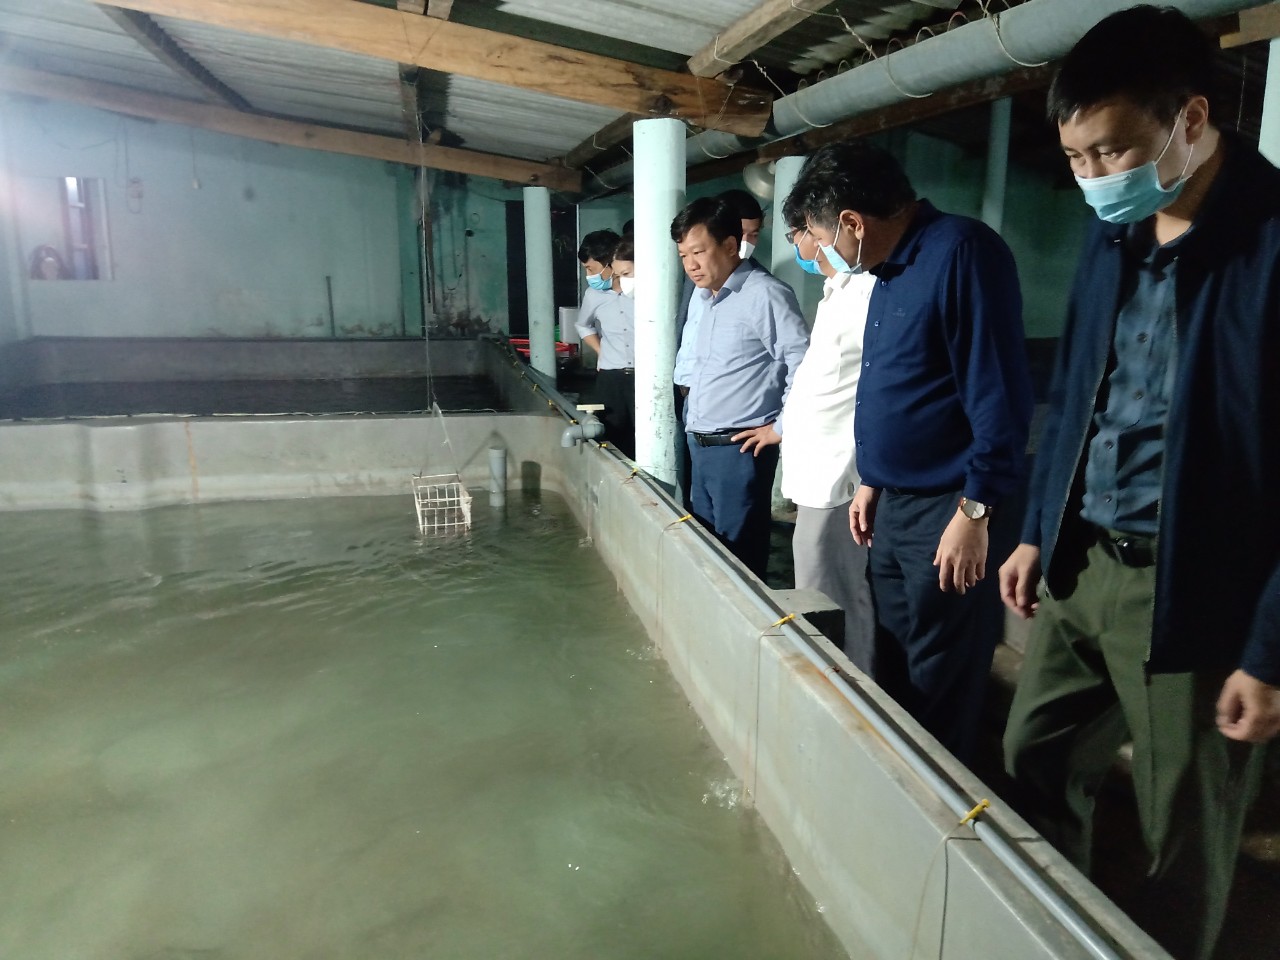 Nuôi cá chình dày đặc trong bể xi măng ở Phú Yên, nhiều người kéo đến xem - Ảnh 1.